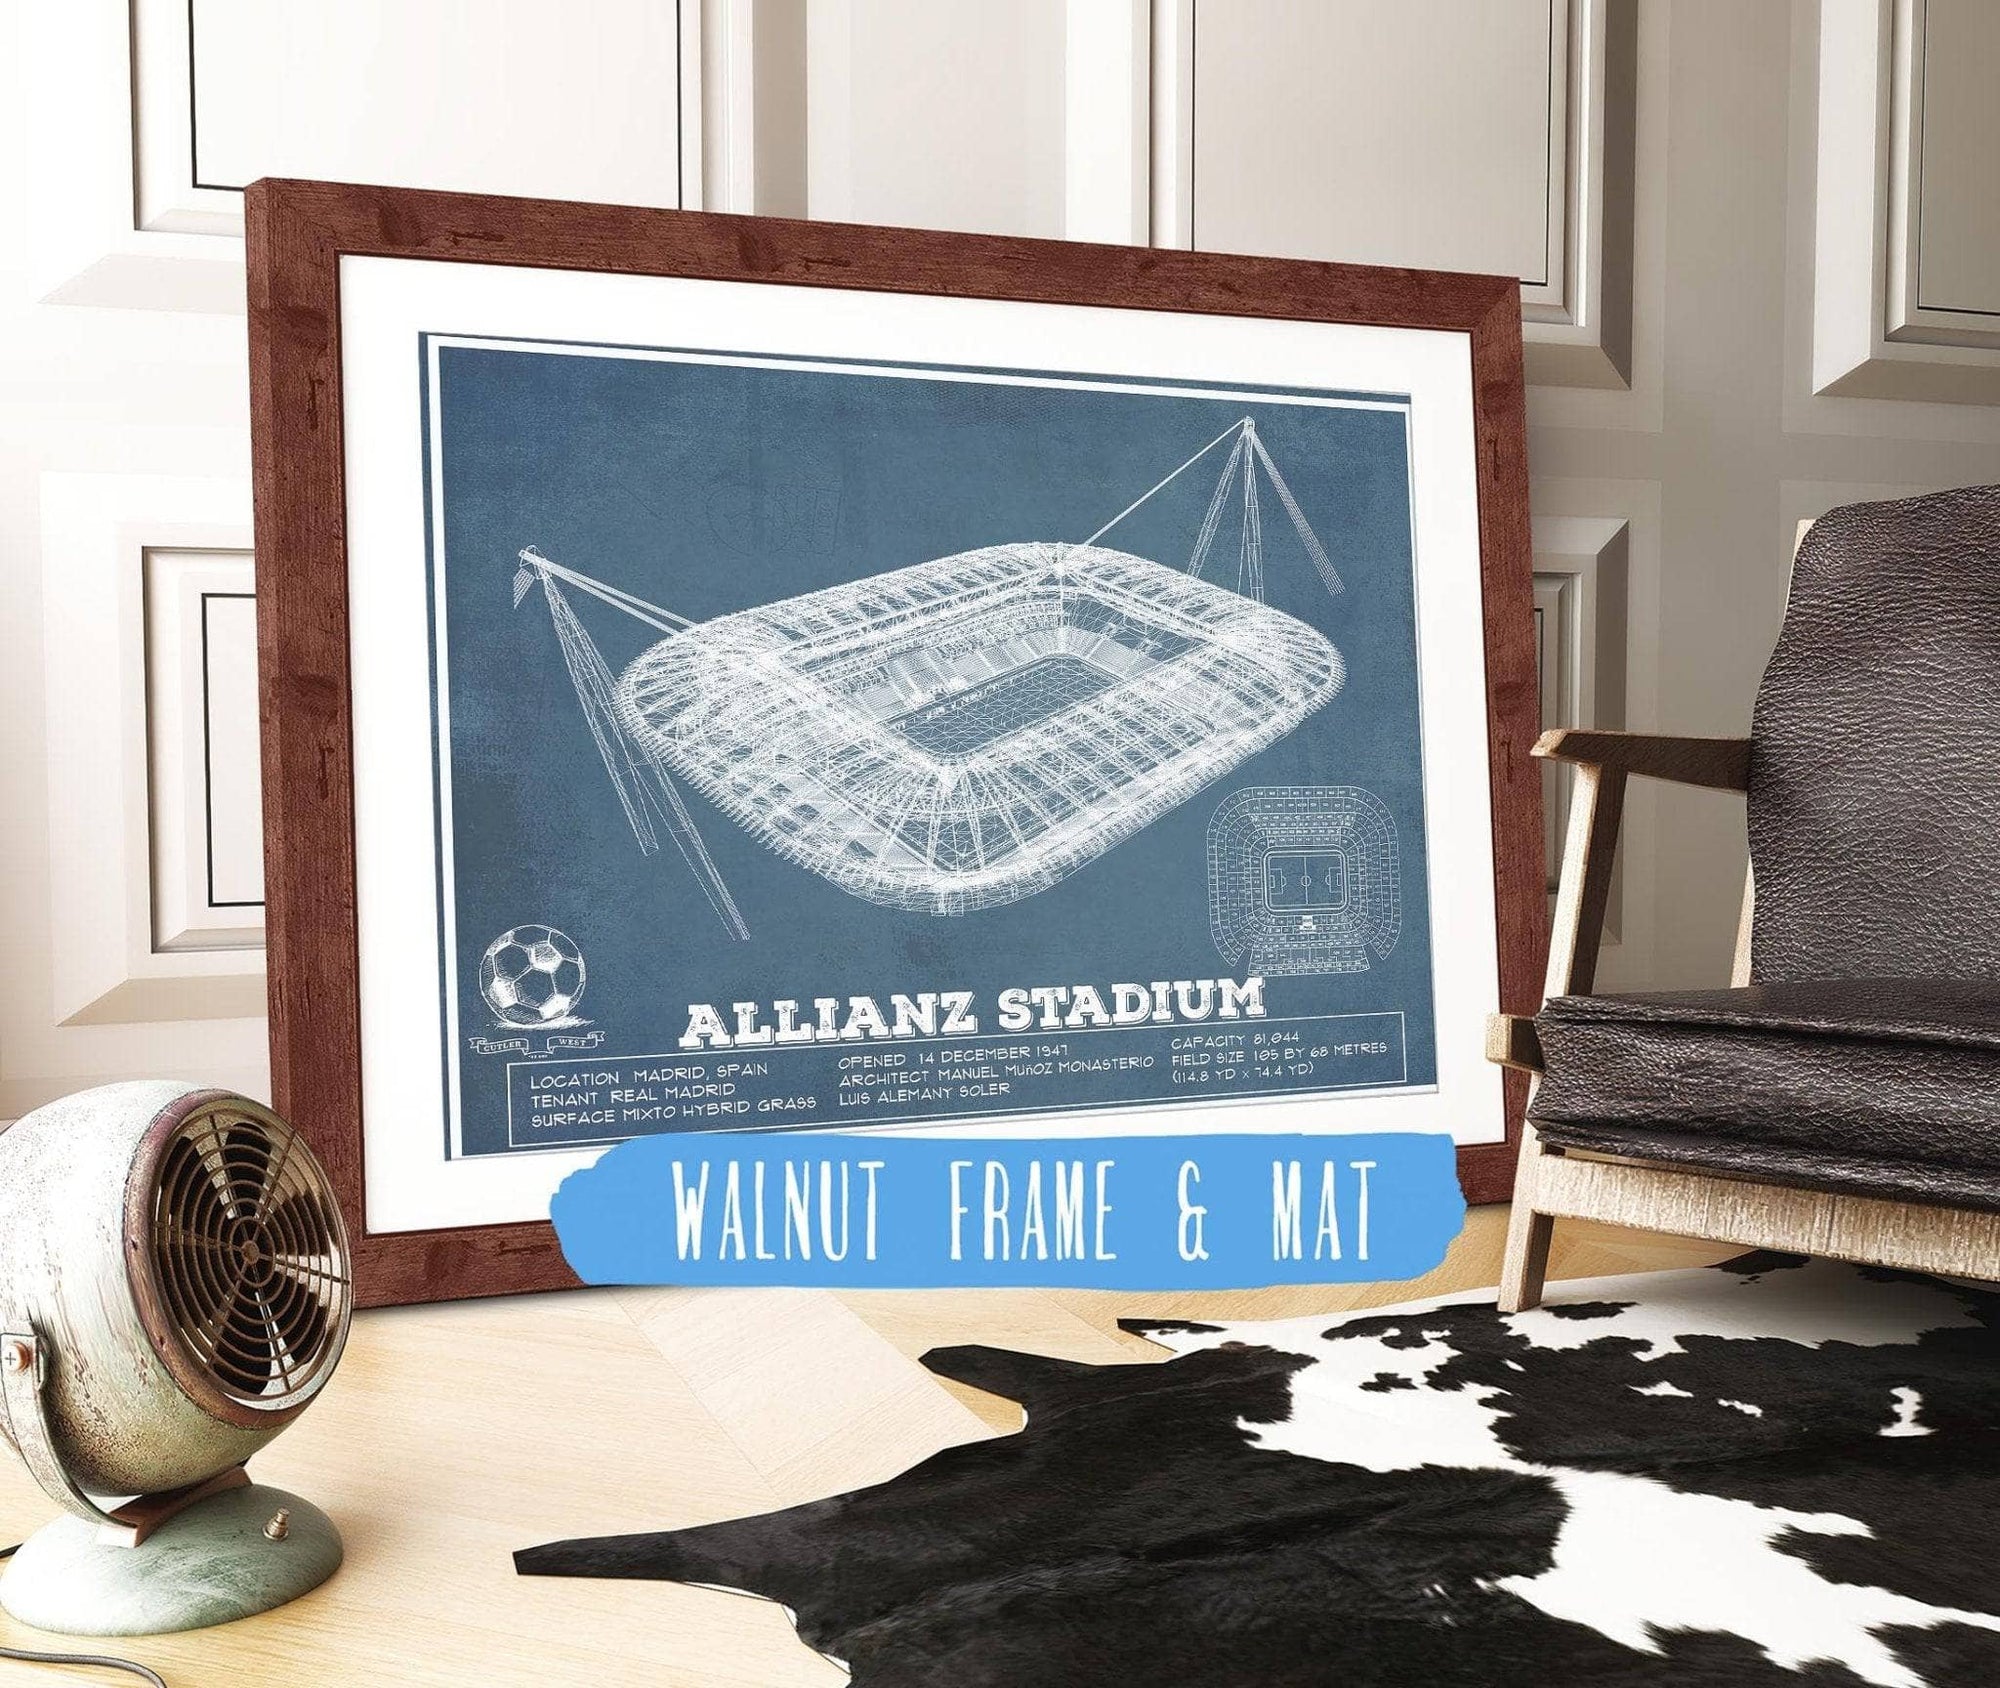 Cutler West Soccer Collection 14" x 11" / Walnut Frame & Mat Juventus Football Club Allianz Stadium Stadium Soccer Print 933350149_56397